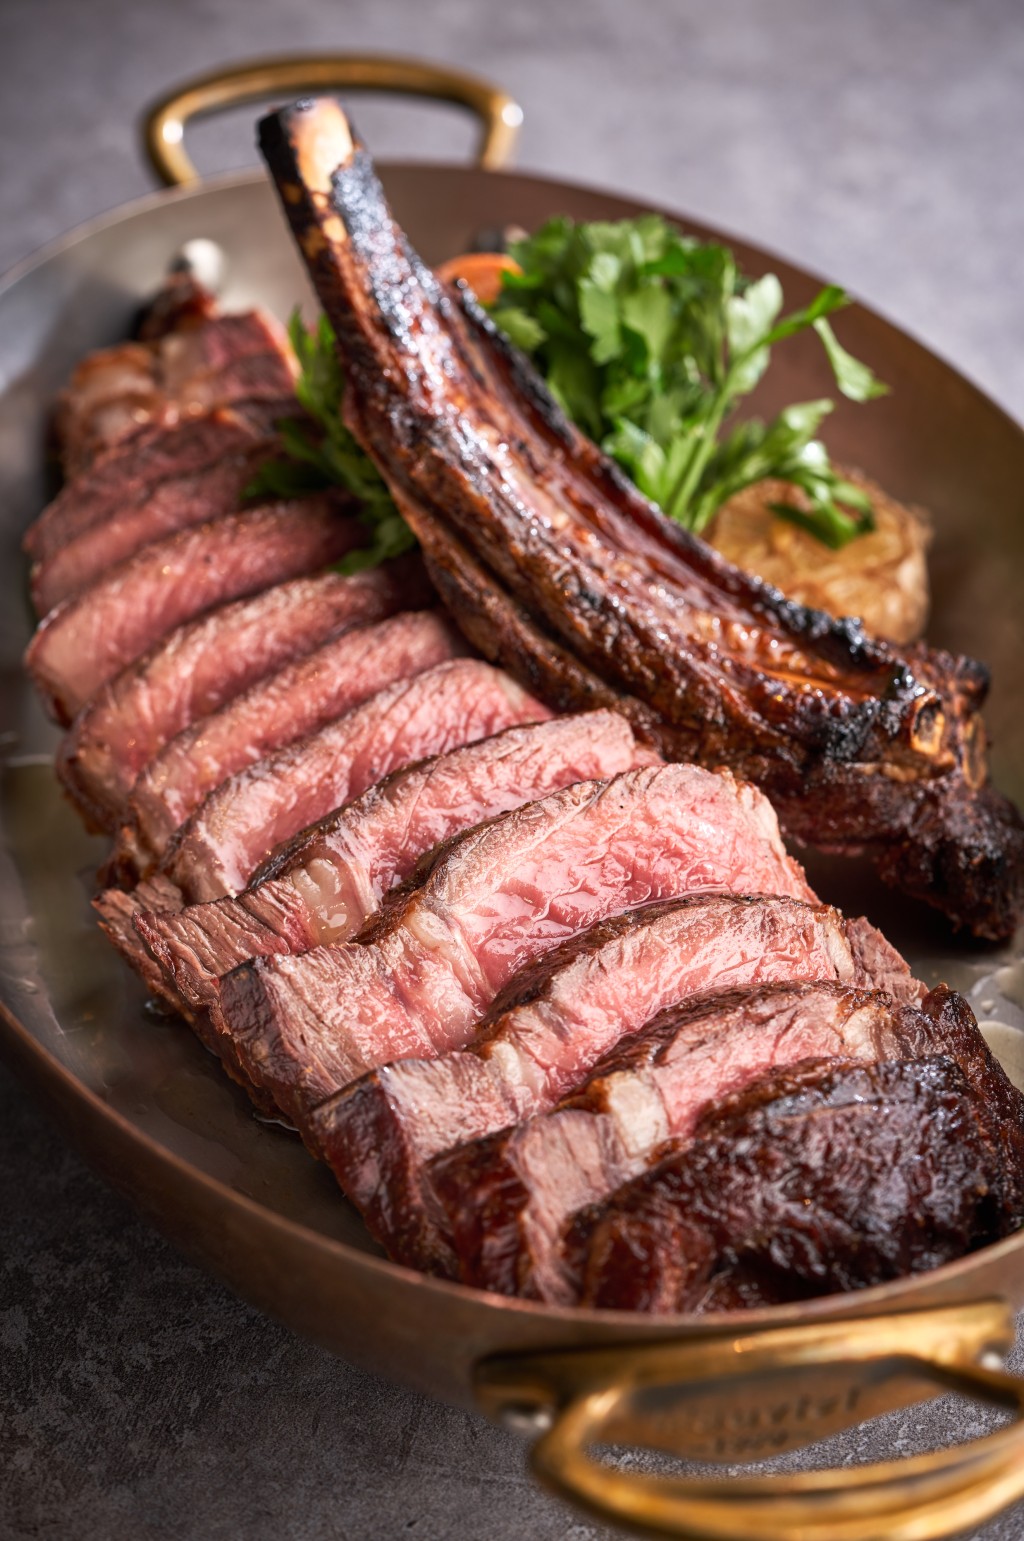 烤夏多布里昂牛排 $1,288，大厨因应牛排肉嫩多汁的特性，烤至半生熟，吃起来肉香多汁。